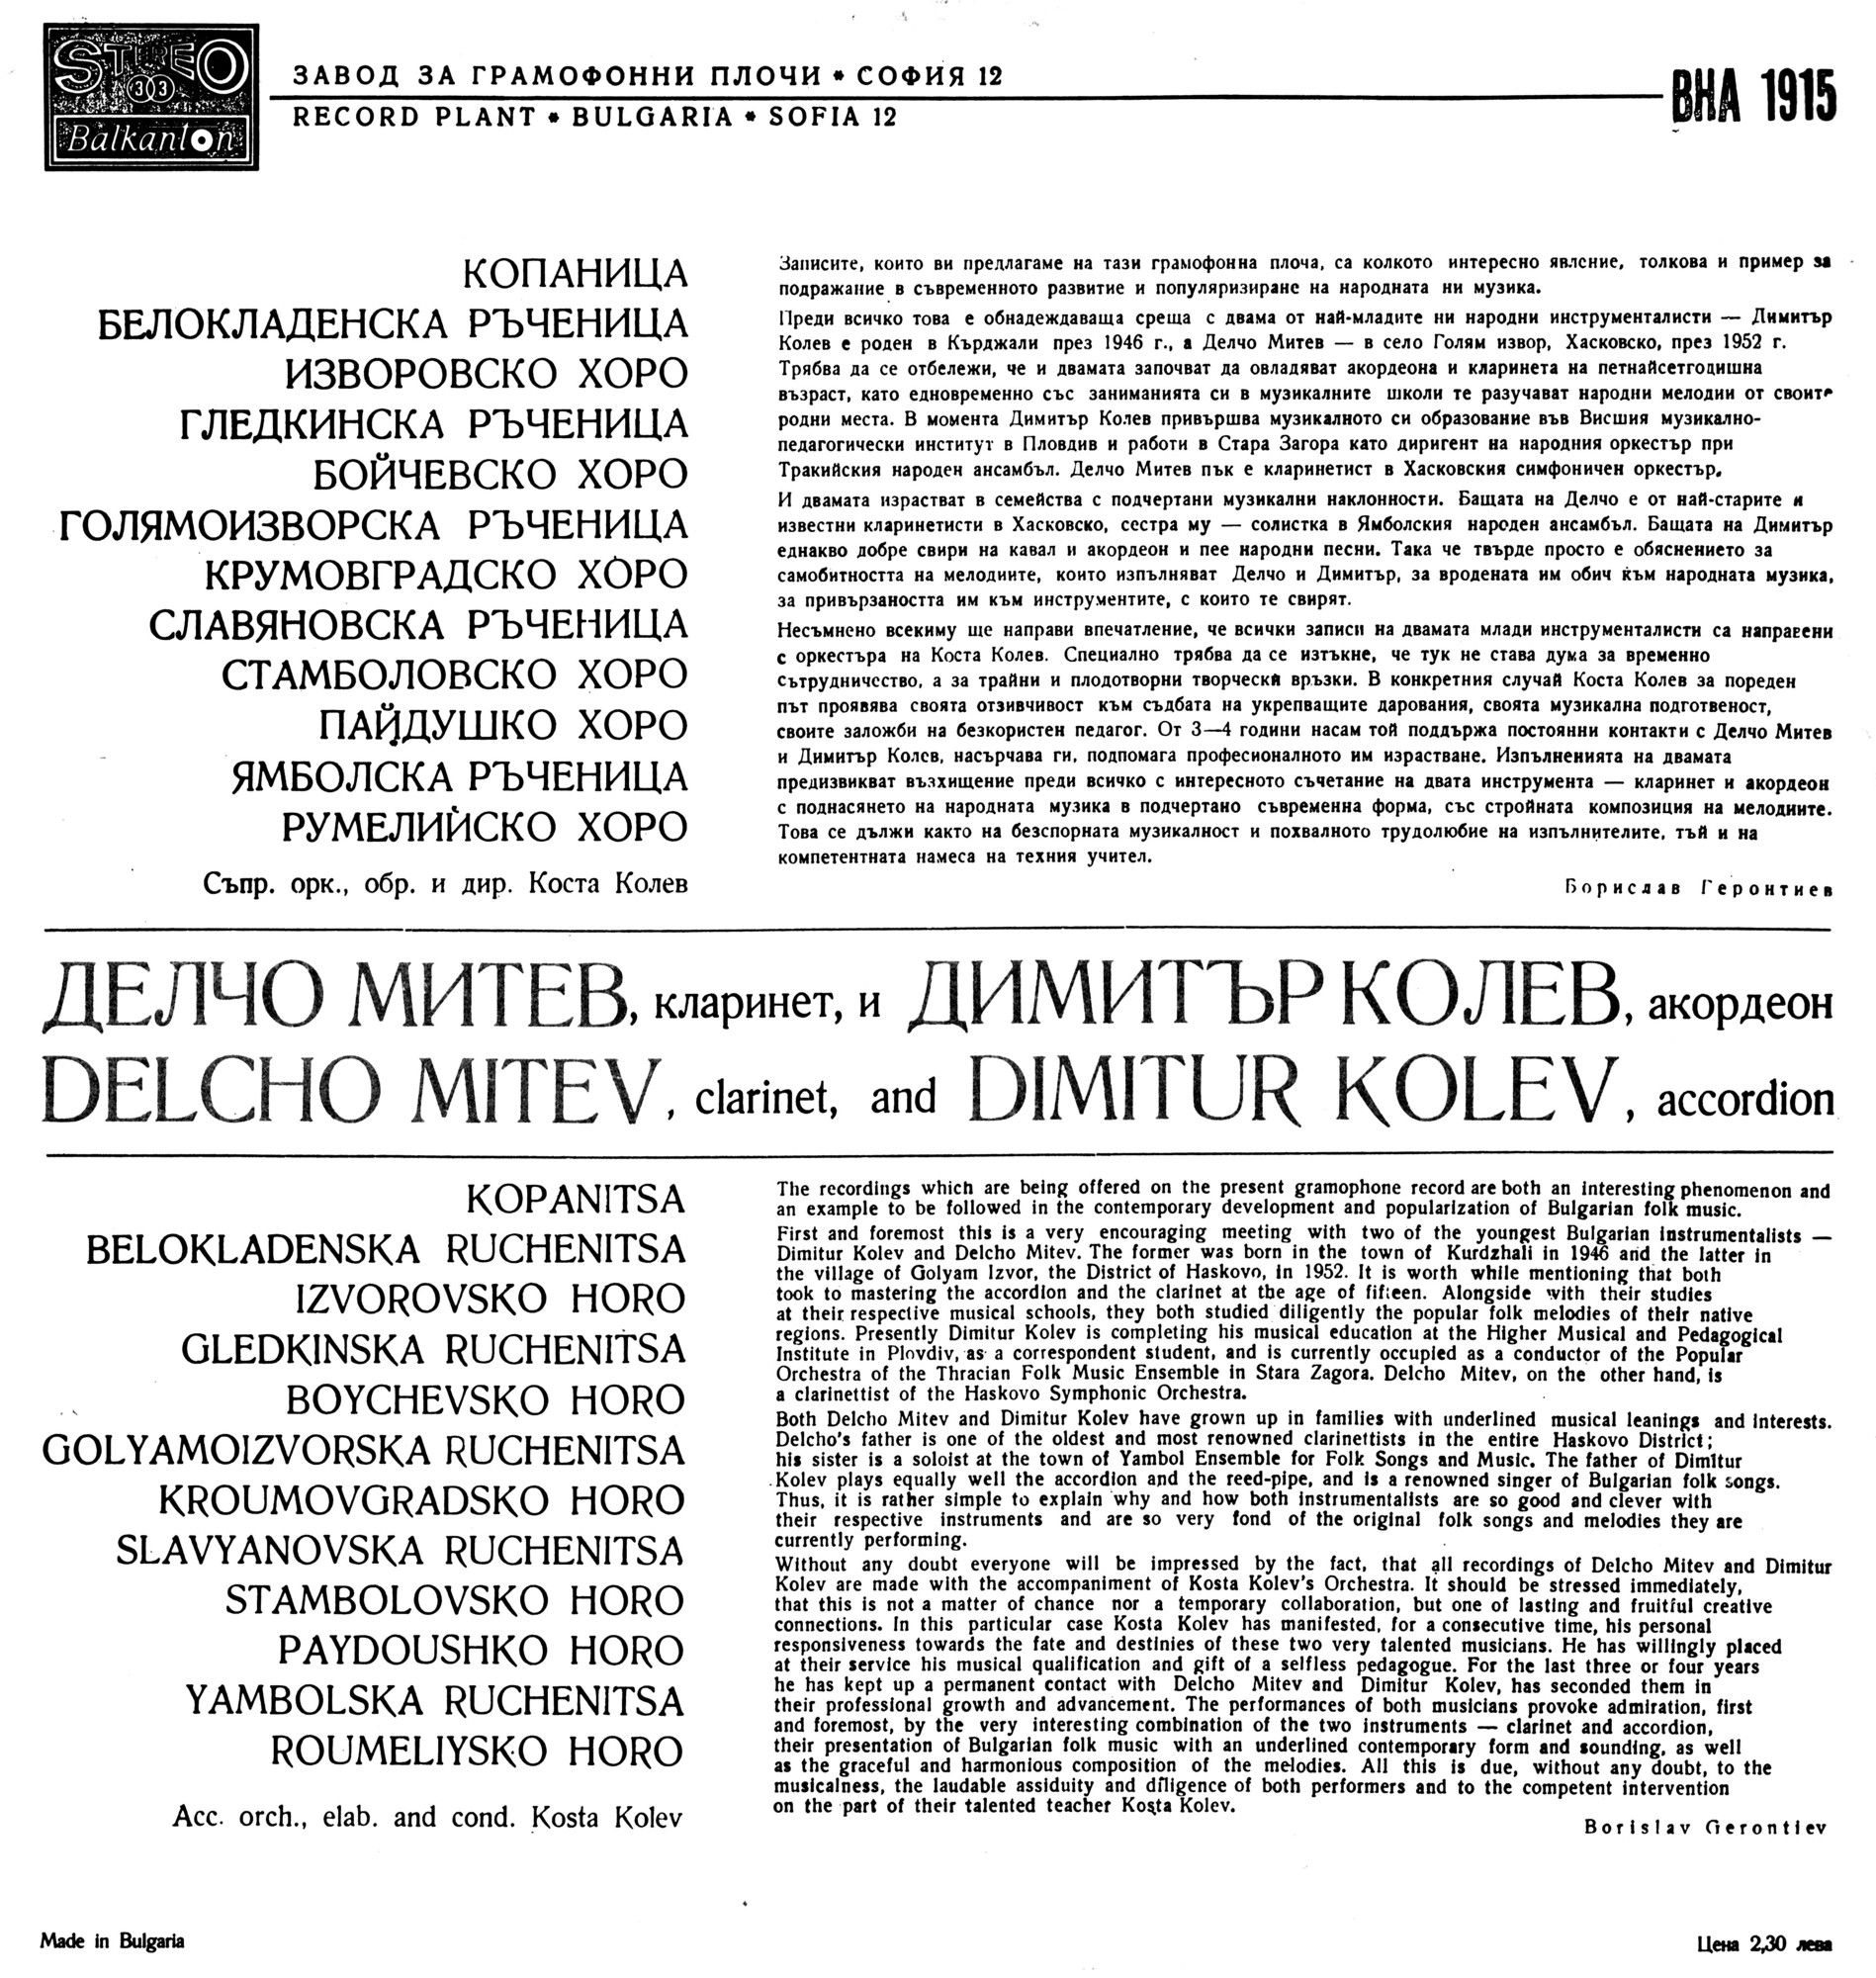 Изпълнения на Делчо Митев - кларинет и Димитър Колев - акордеон